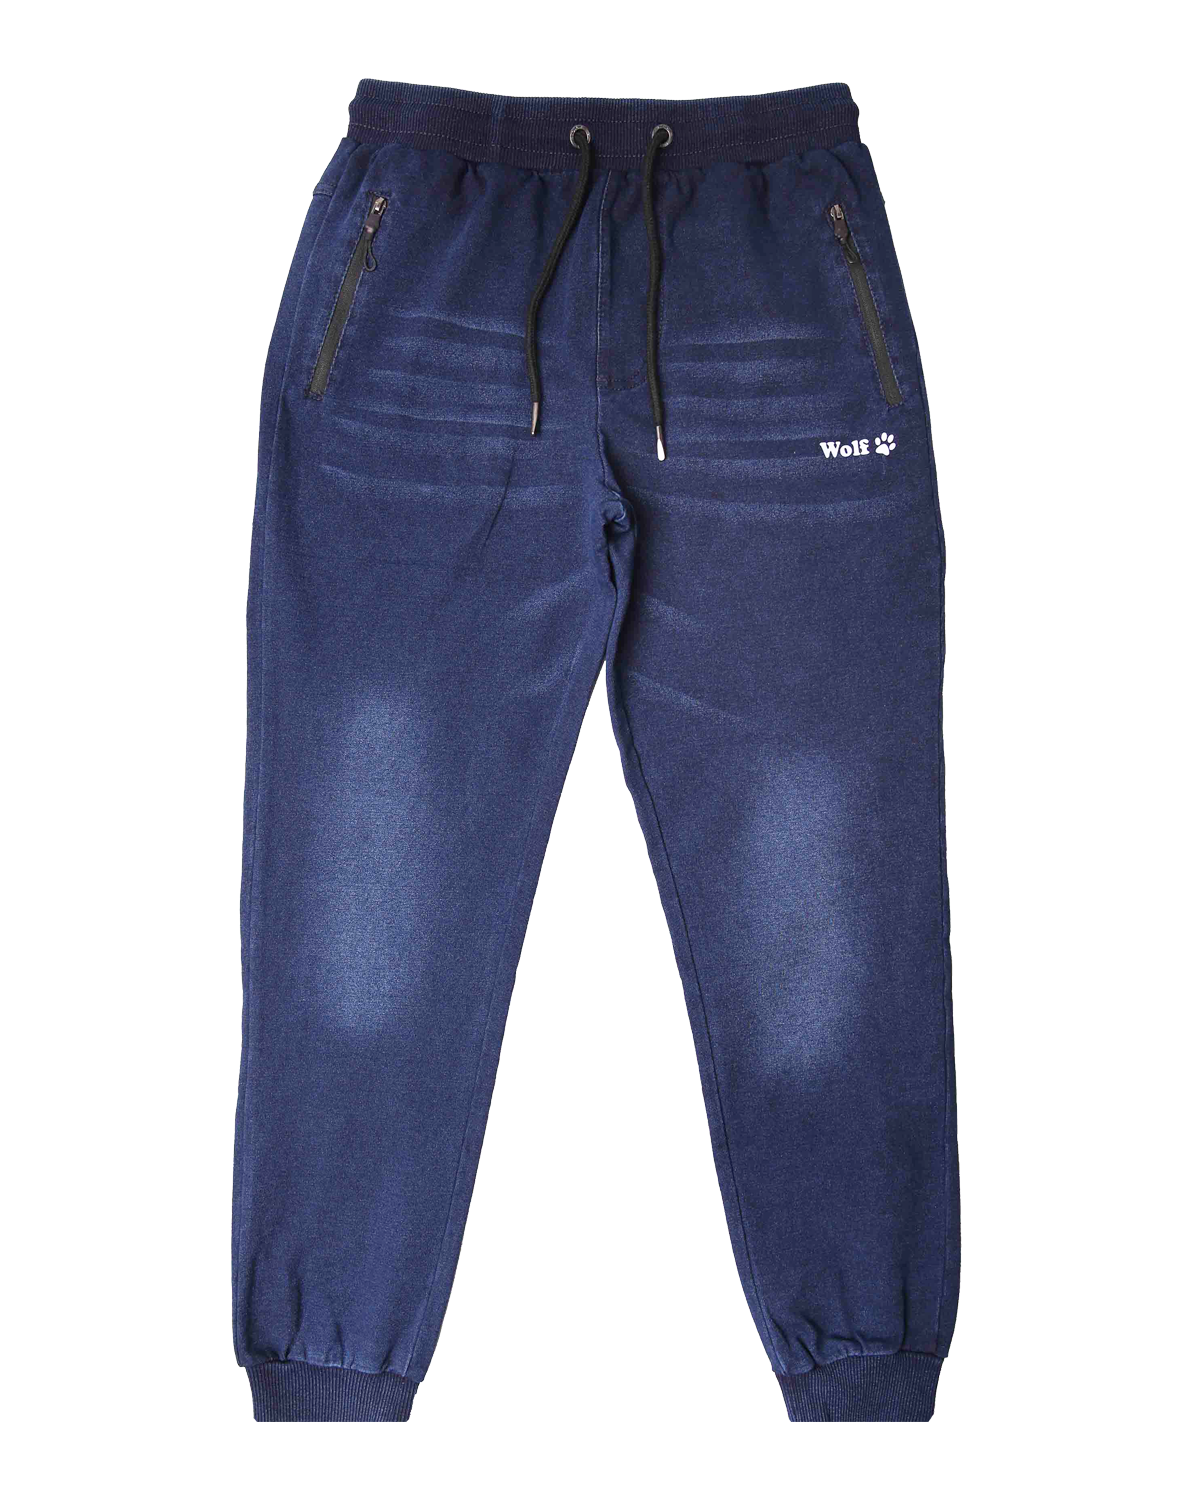 Chlapecké riflové kalhoty, tepláky - Wolf T2461, modrá Barva: Modrá, Velikost: 146